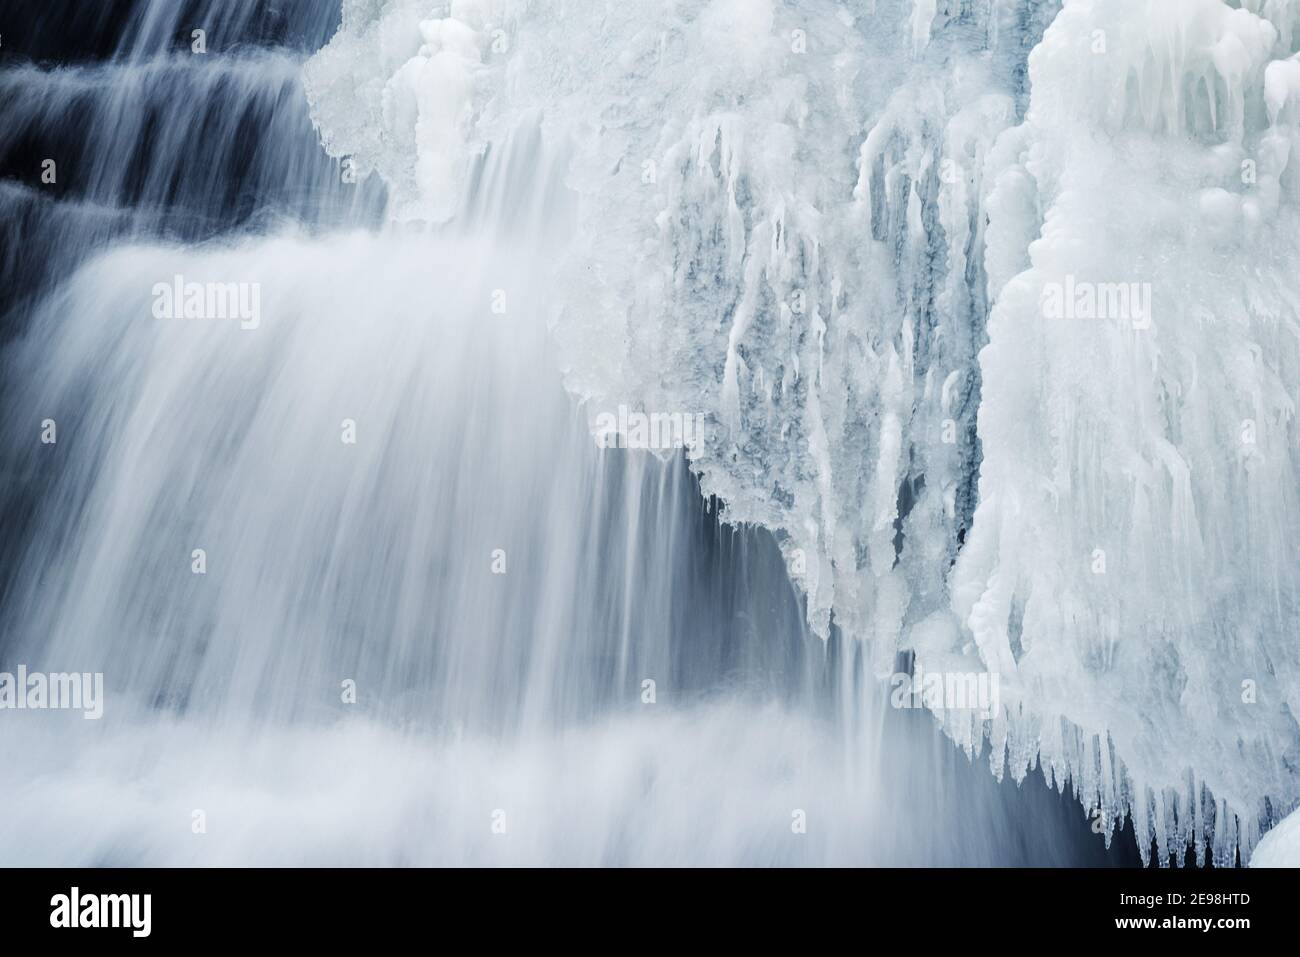 Formations de glace dans une cascade au Québec, Canada Banque D'Images